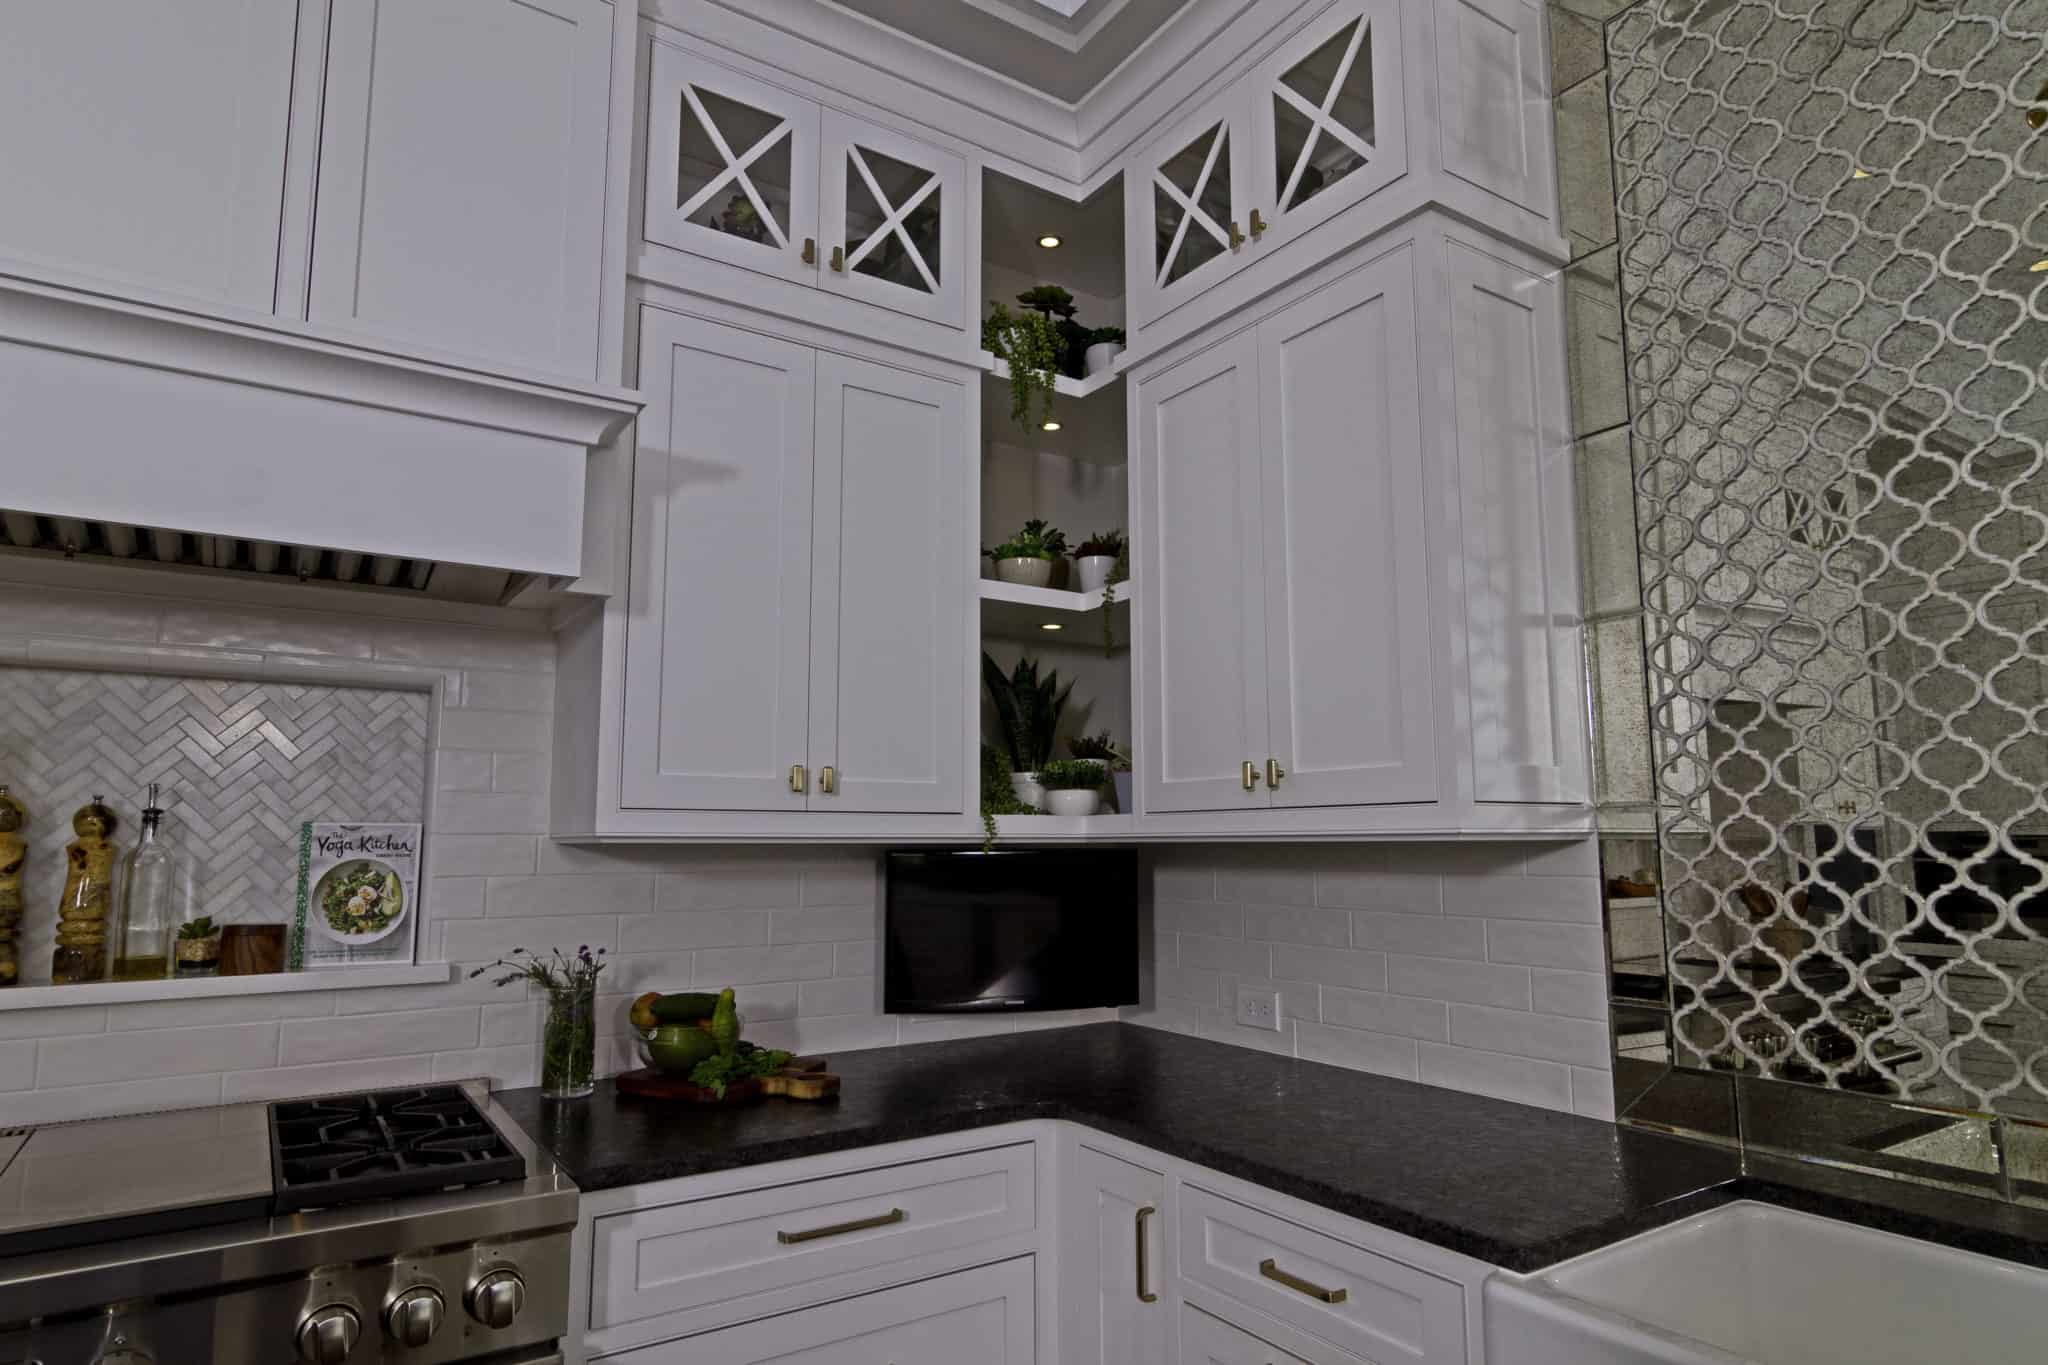 mccabinet kitchen cabinet designs